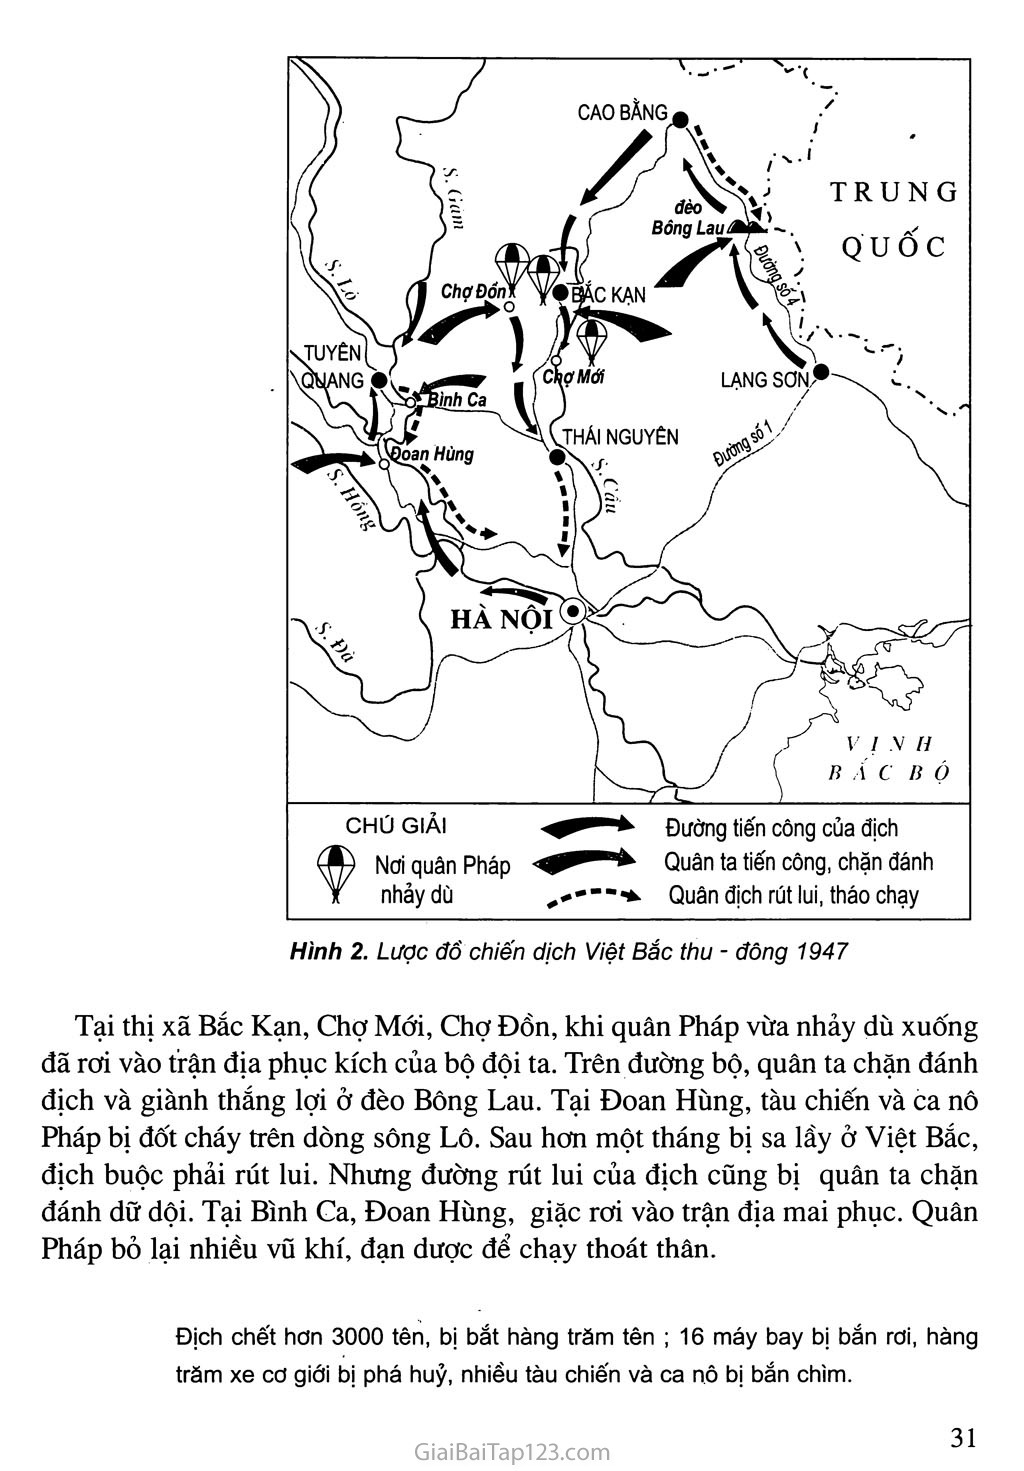 Bài 14. Thu - đông 1947, Việt Bắc “mồ chôn giặc Pháp” trang 2